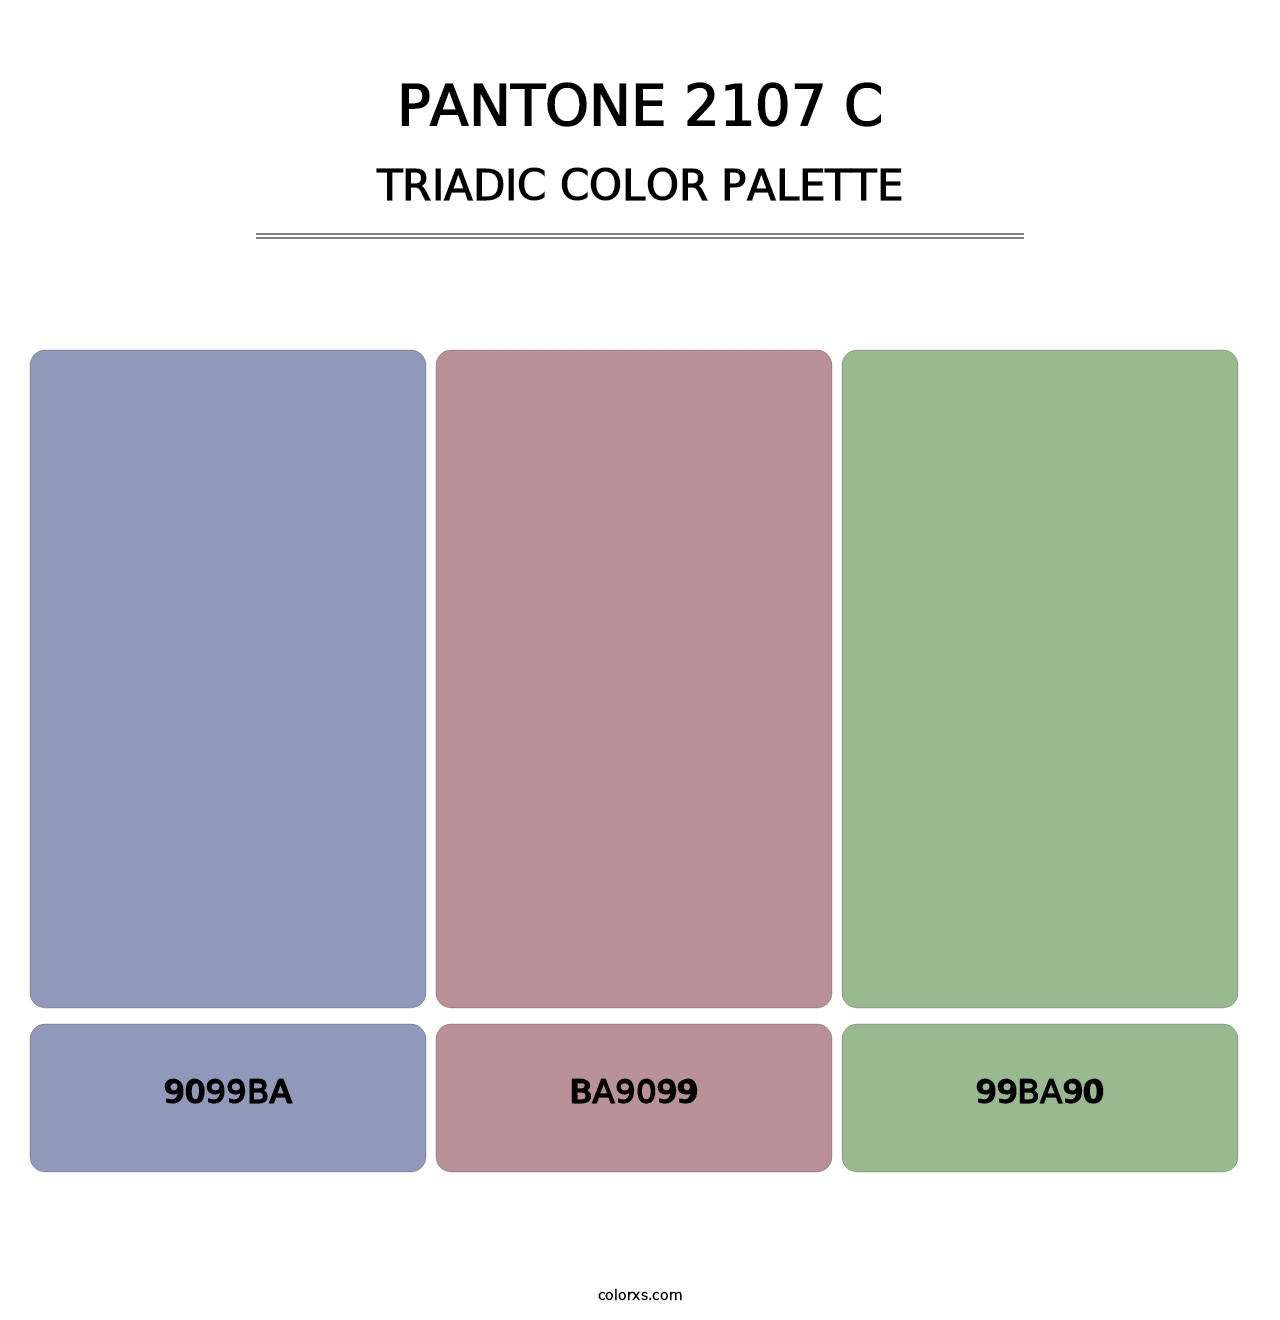 PANTONE 2107 C - Triadic Color Palette